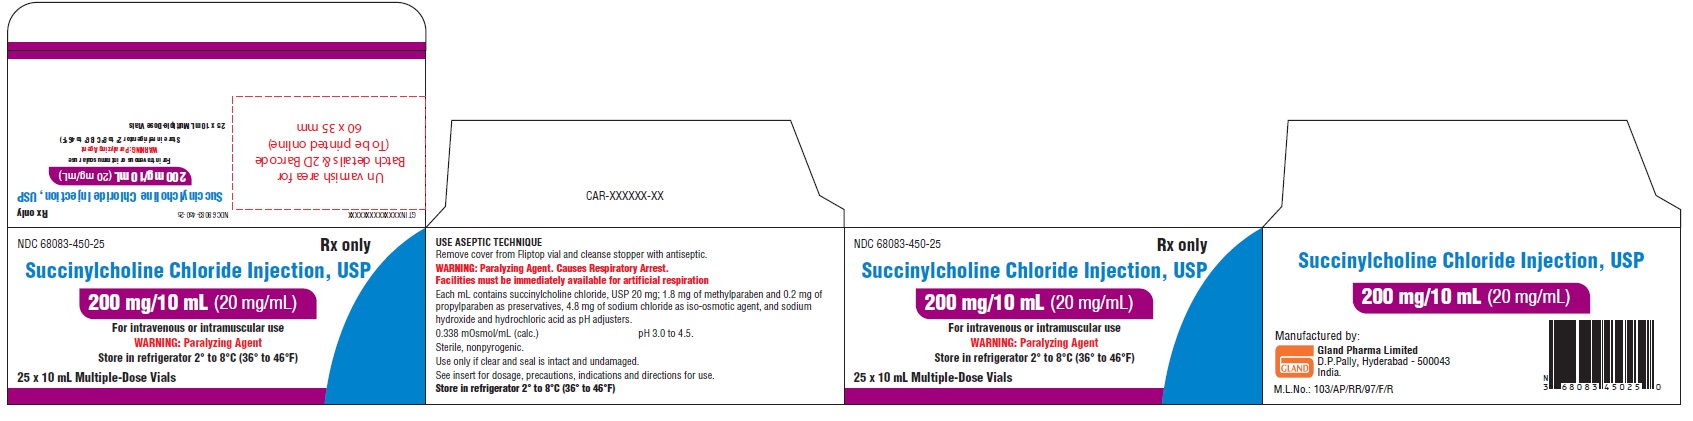 succinylcholine-chloride-spl-carton-label